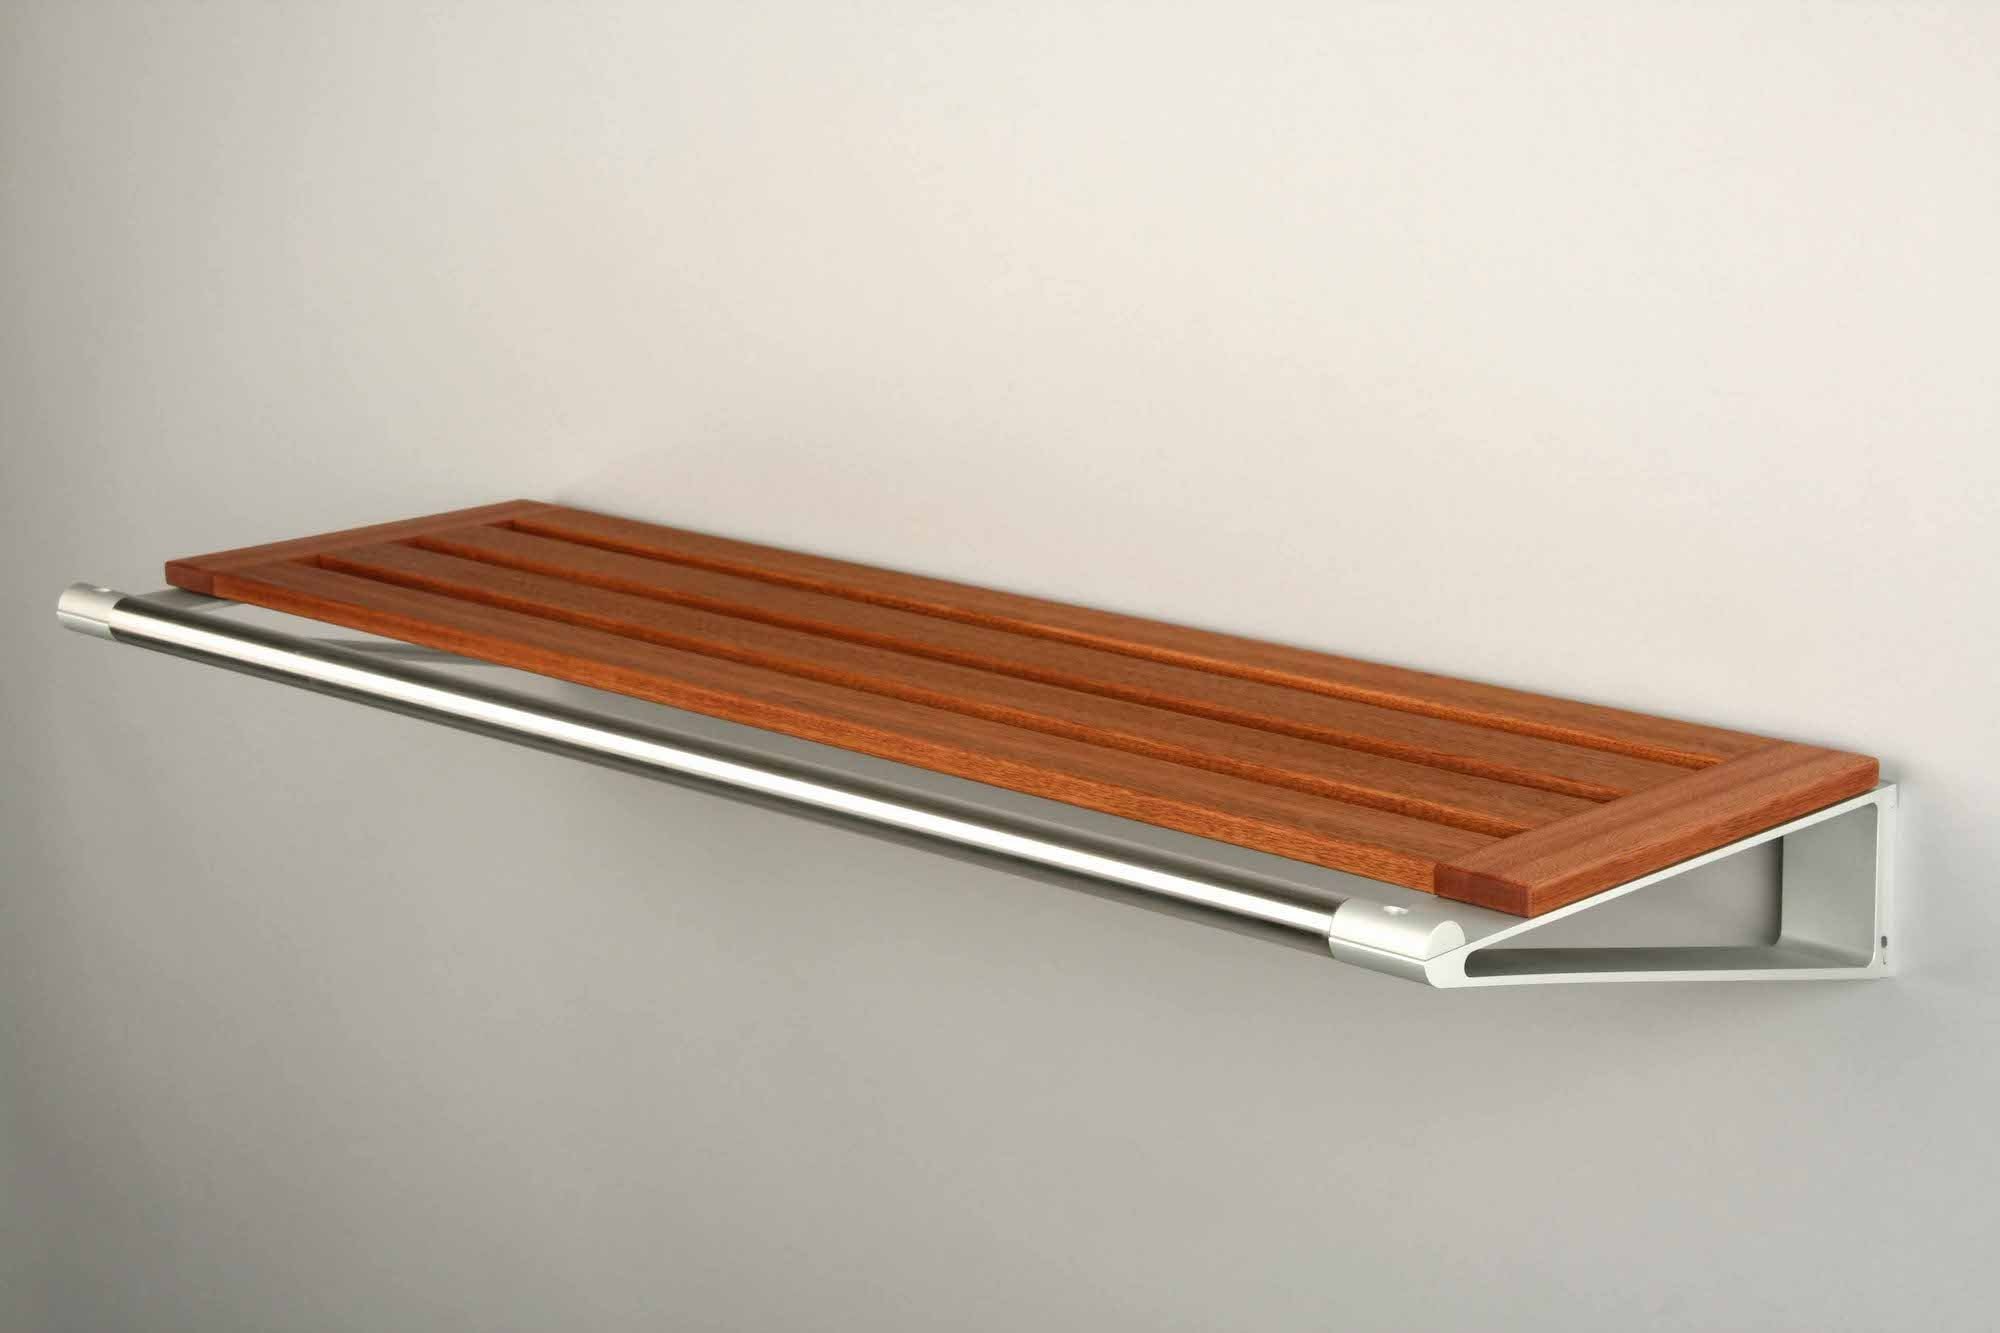 Metalen wandplank van hout met ophangrail